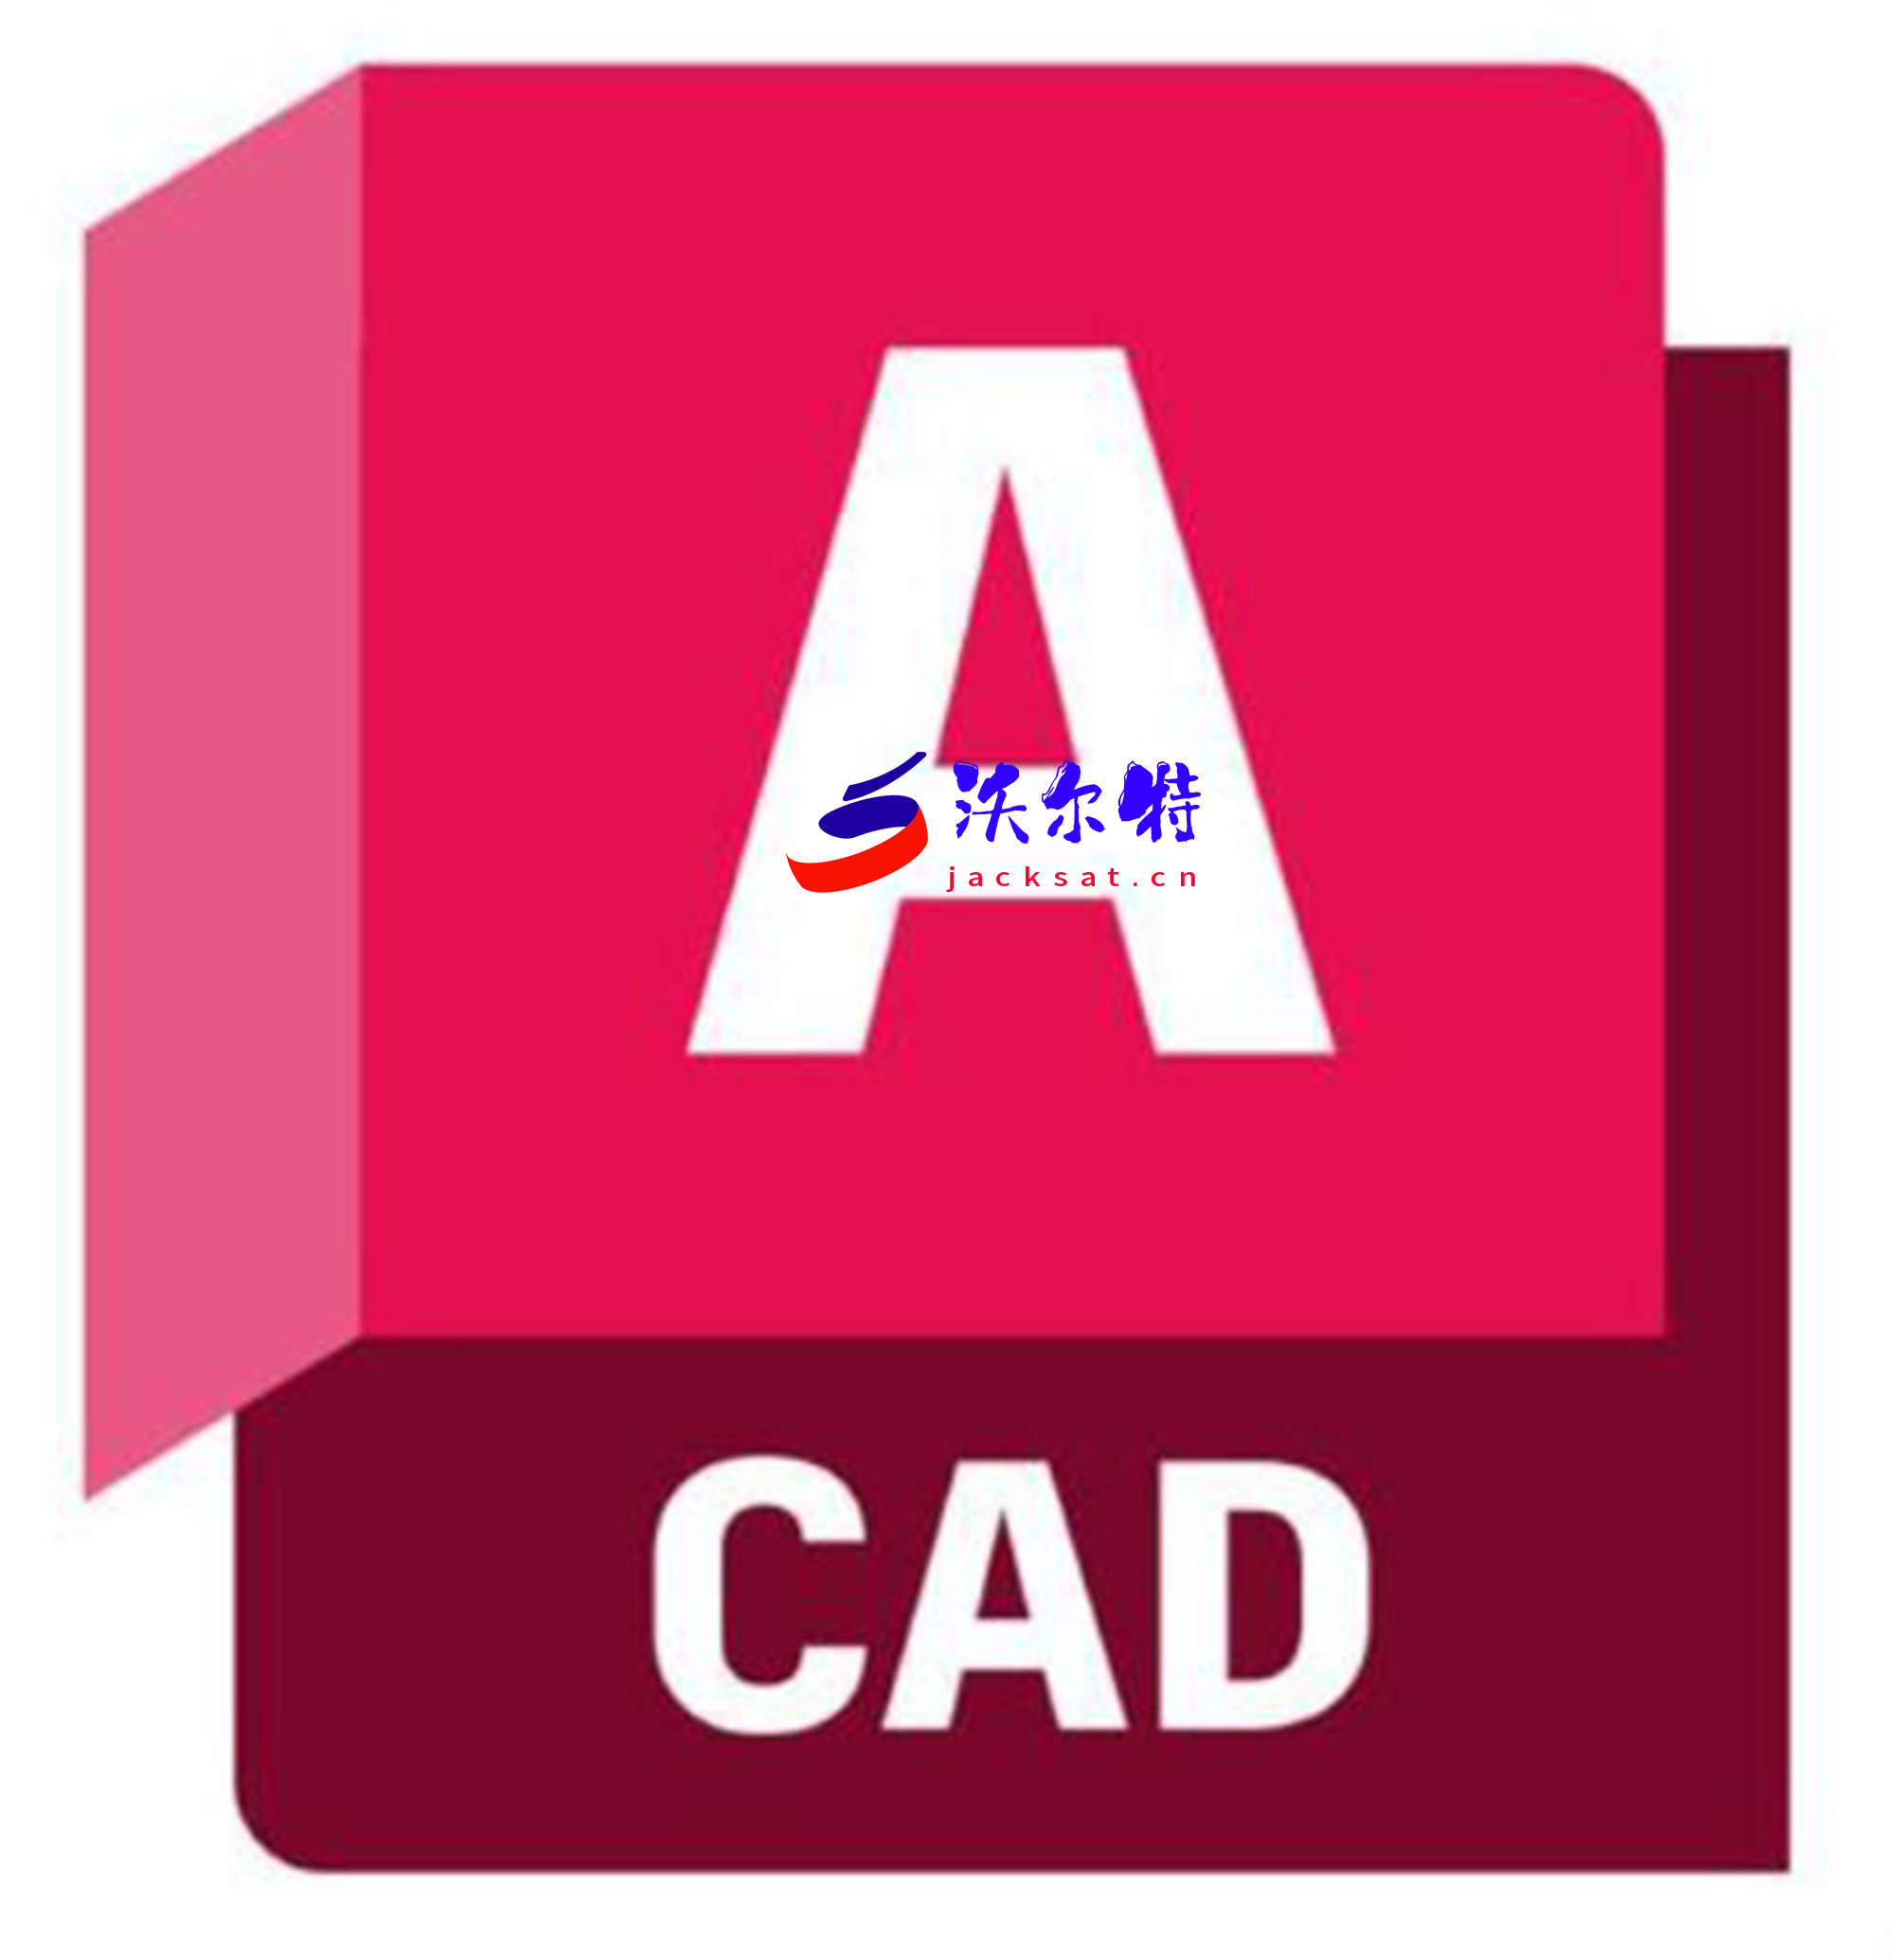 掌握CAD软件：从新手到高手的飞跃之旅 - 沃尔特技术-网站源码-网站系统-网站模板-商业源码-整站源码-源码下载-游戏下载沃尔特技术